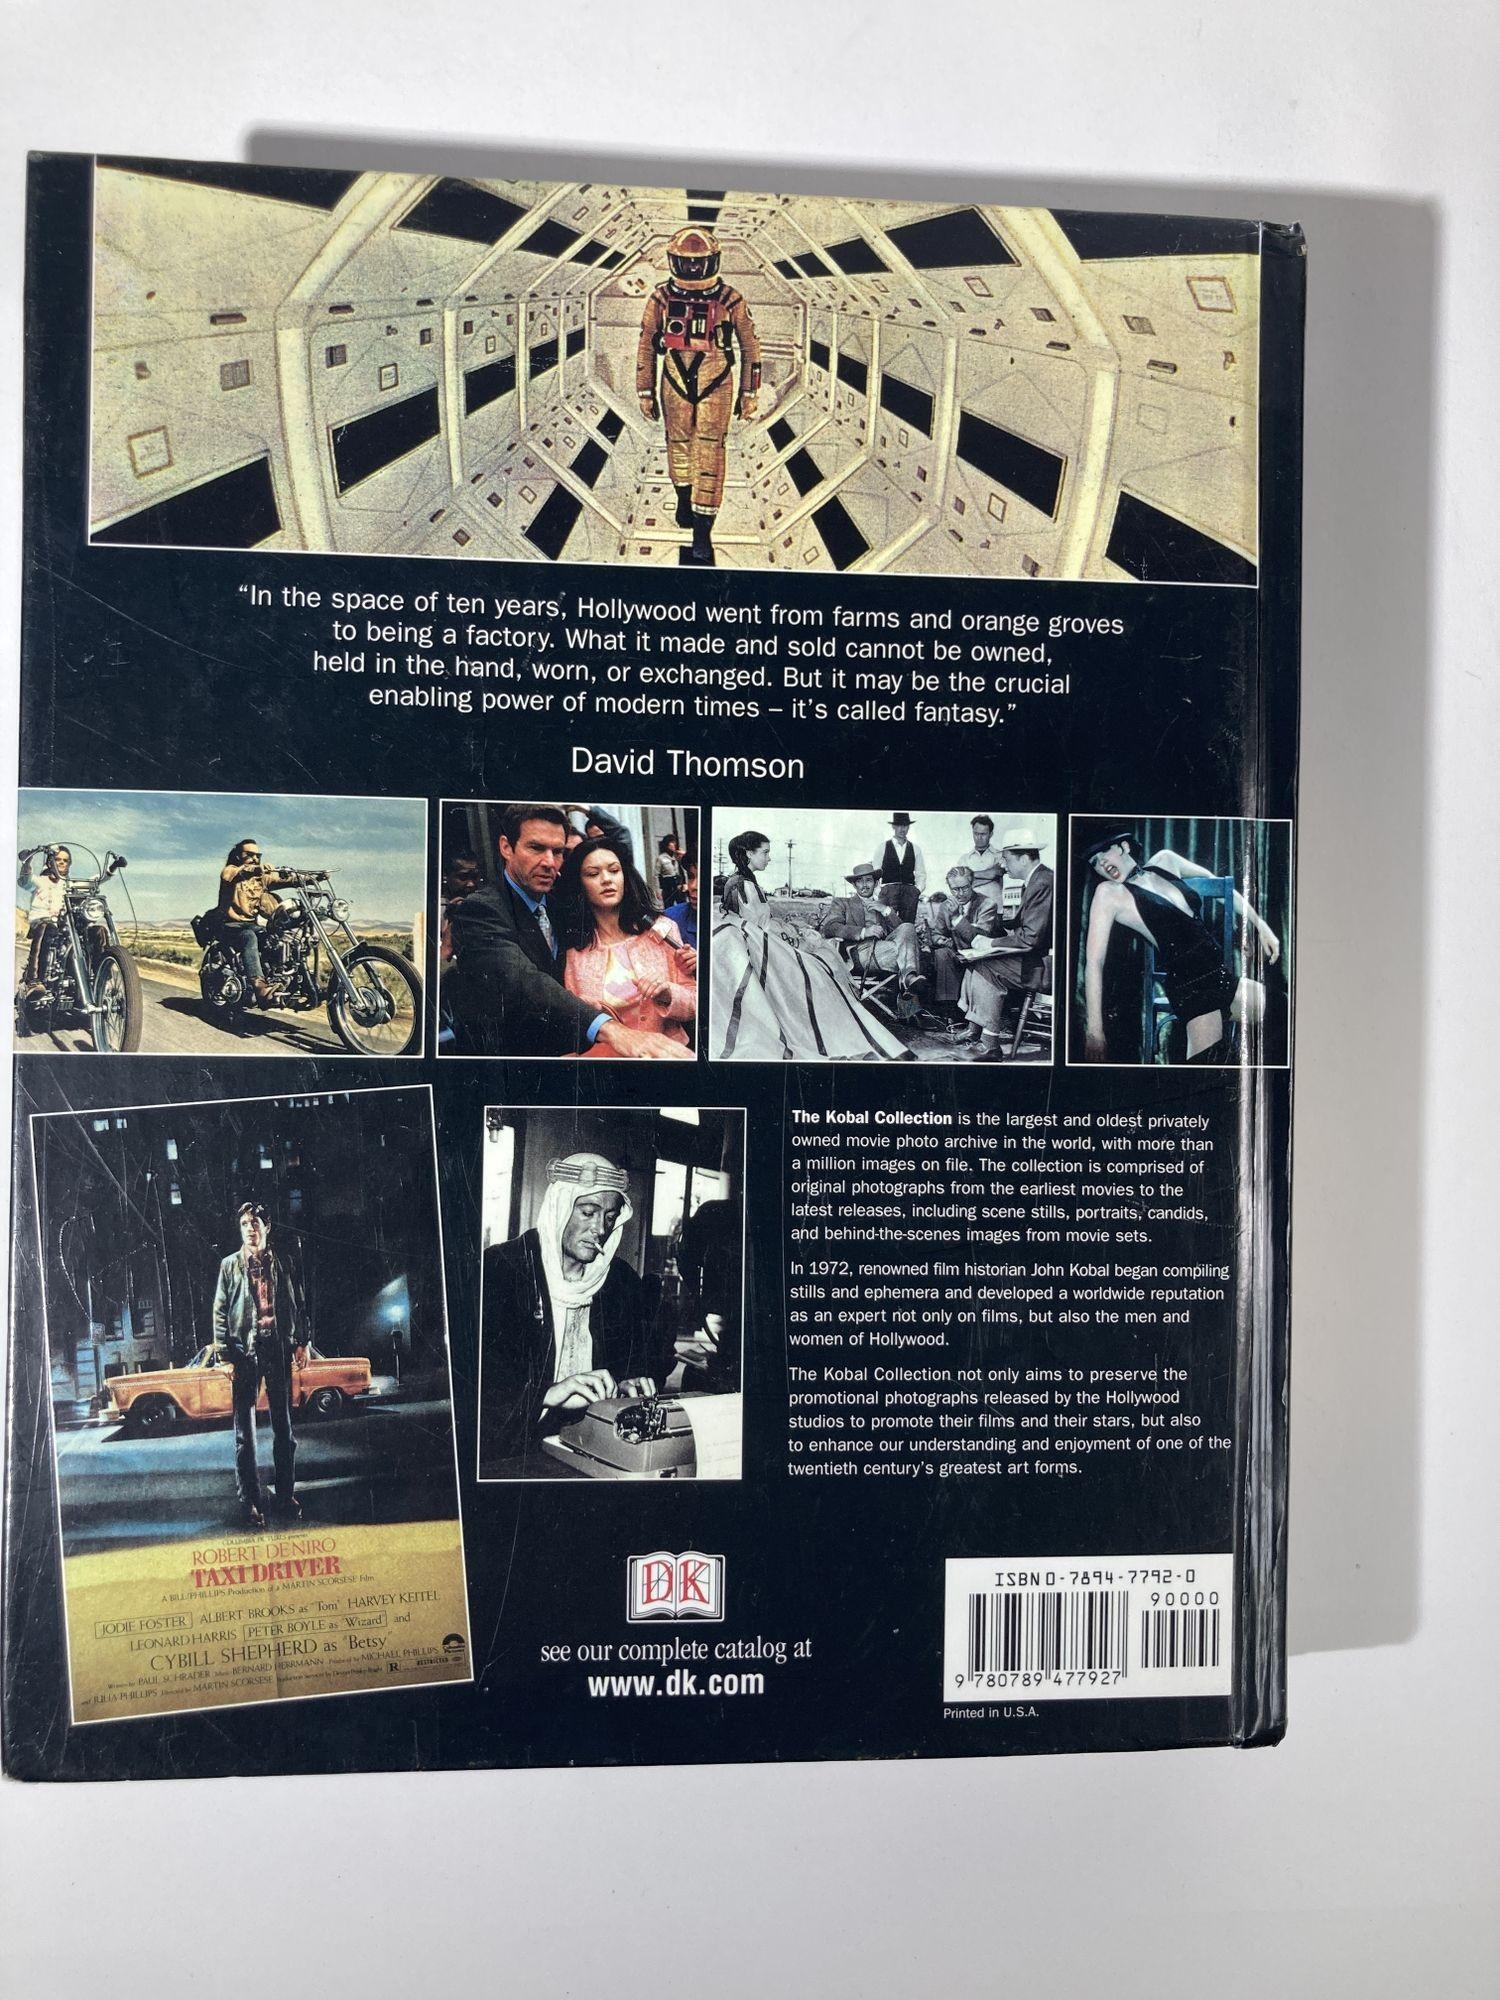 Hollywood: Un Libro de Celebración de David Thomson Siglo XXI y contemporáneo en venta